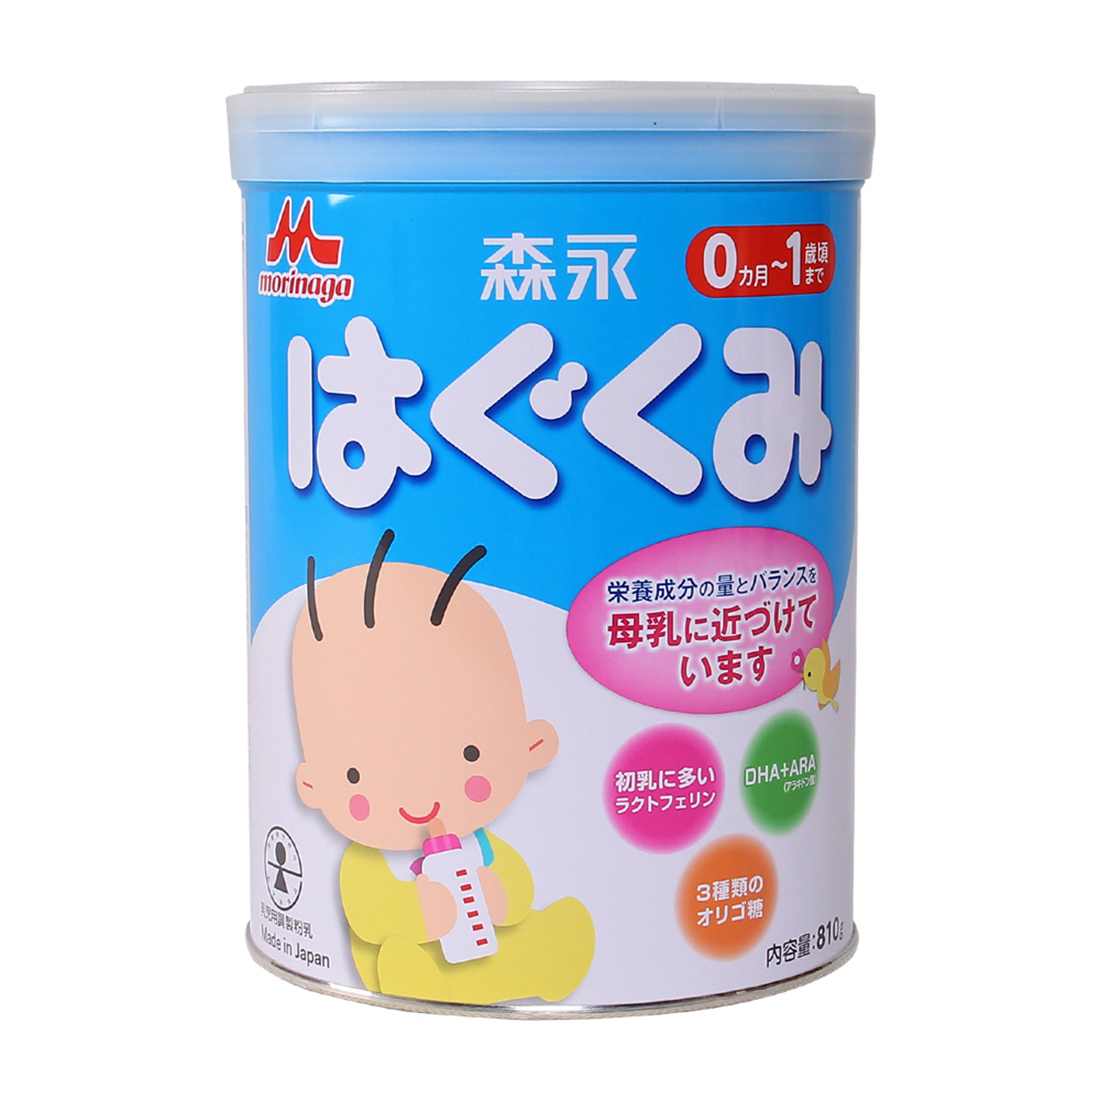 Sữa Morinaga số 0 810g - Cho bé từ 0 đến 1 tuổi